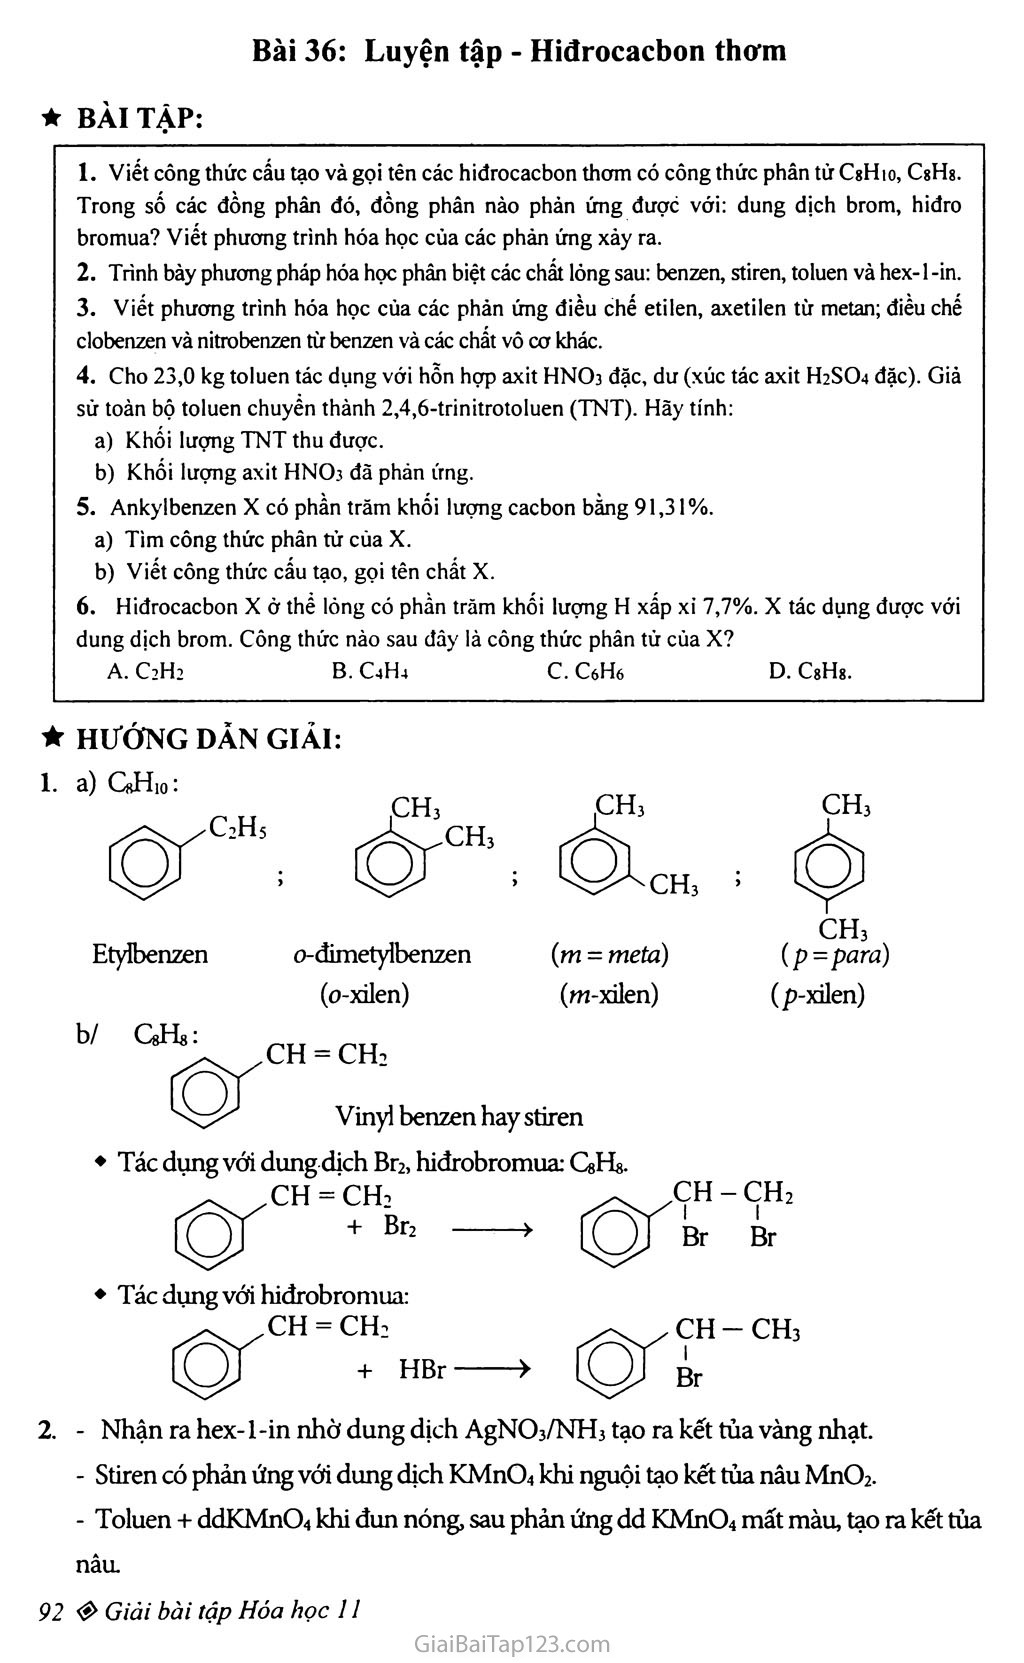 Bài 36: Luyên tập: Hiđrocacbon thơm trang 1